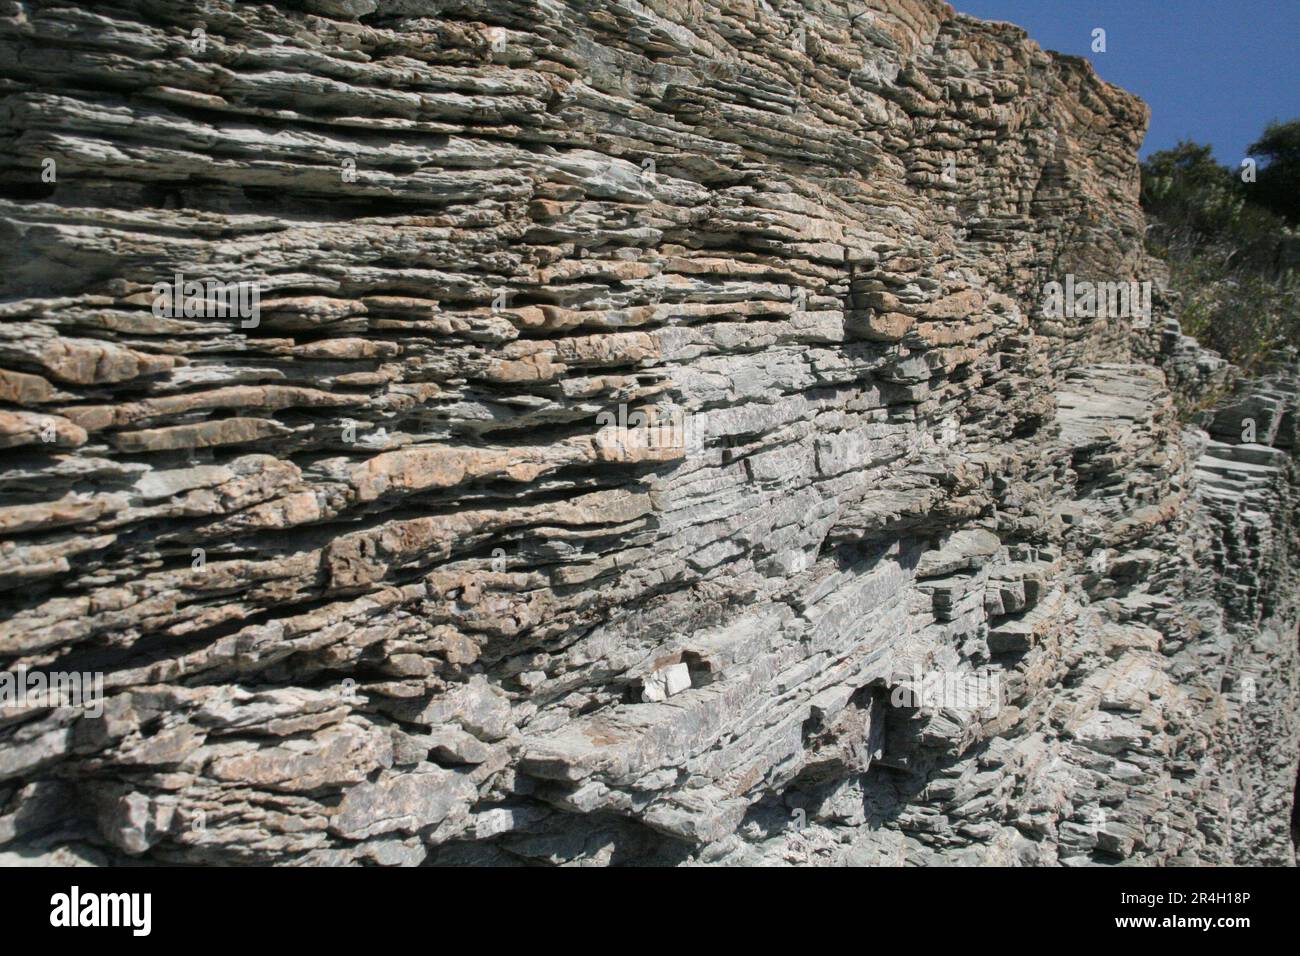 Natürliche Küstenfelsformation Oberfläche raues Material Nahaufnahme strukturiertes Wandmuster Hintergrund rissige Grunge-Klippen Oberfläche Stockfoto